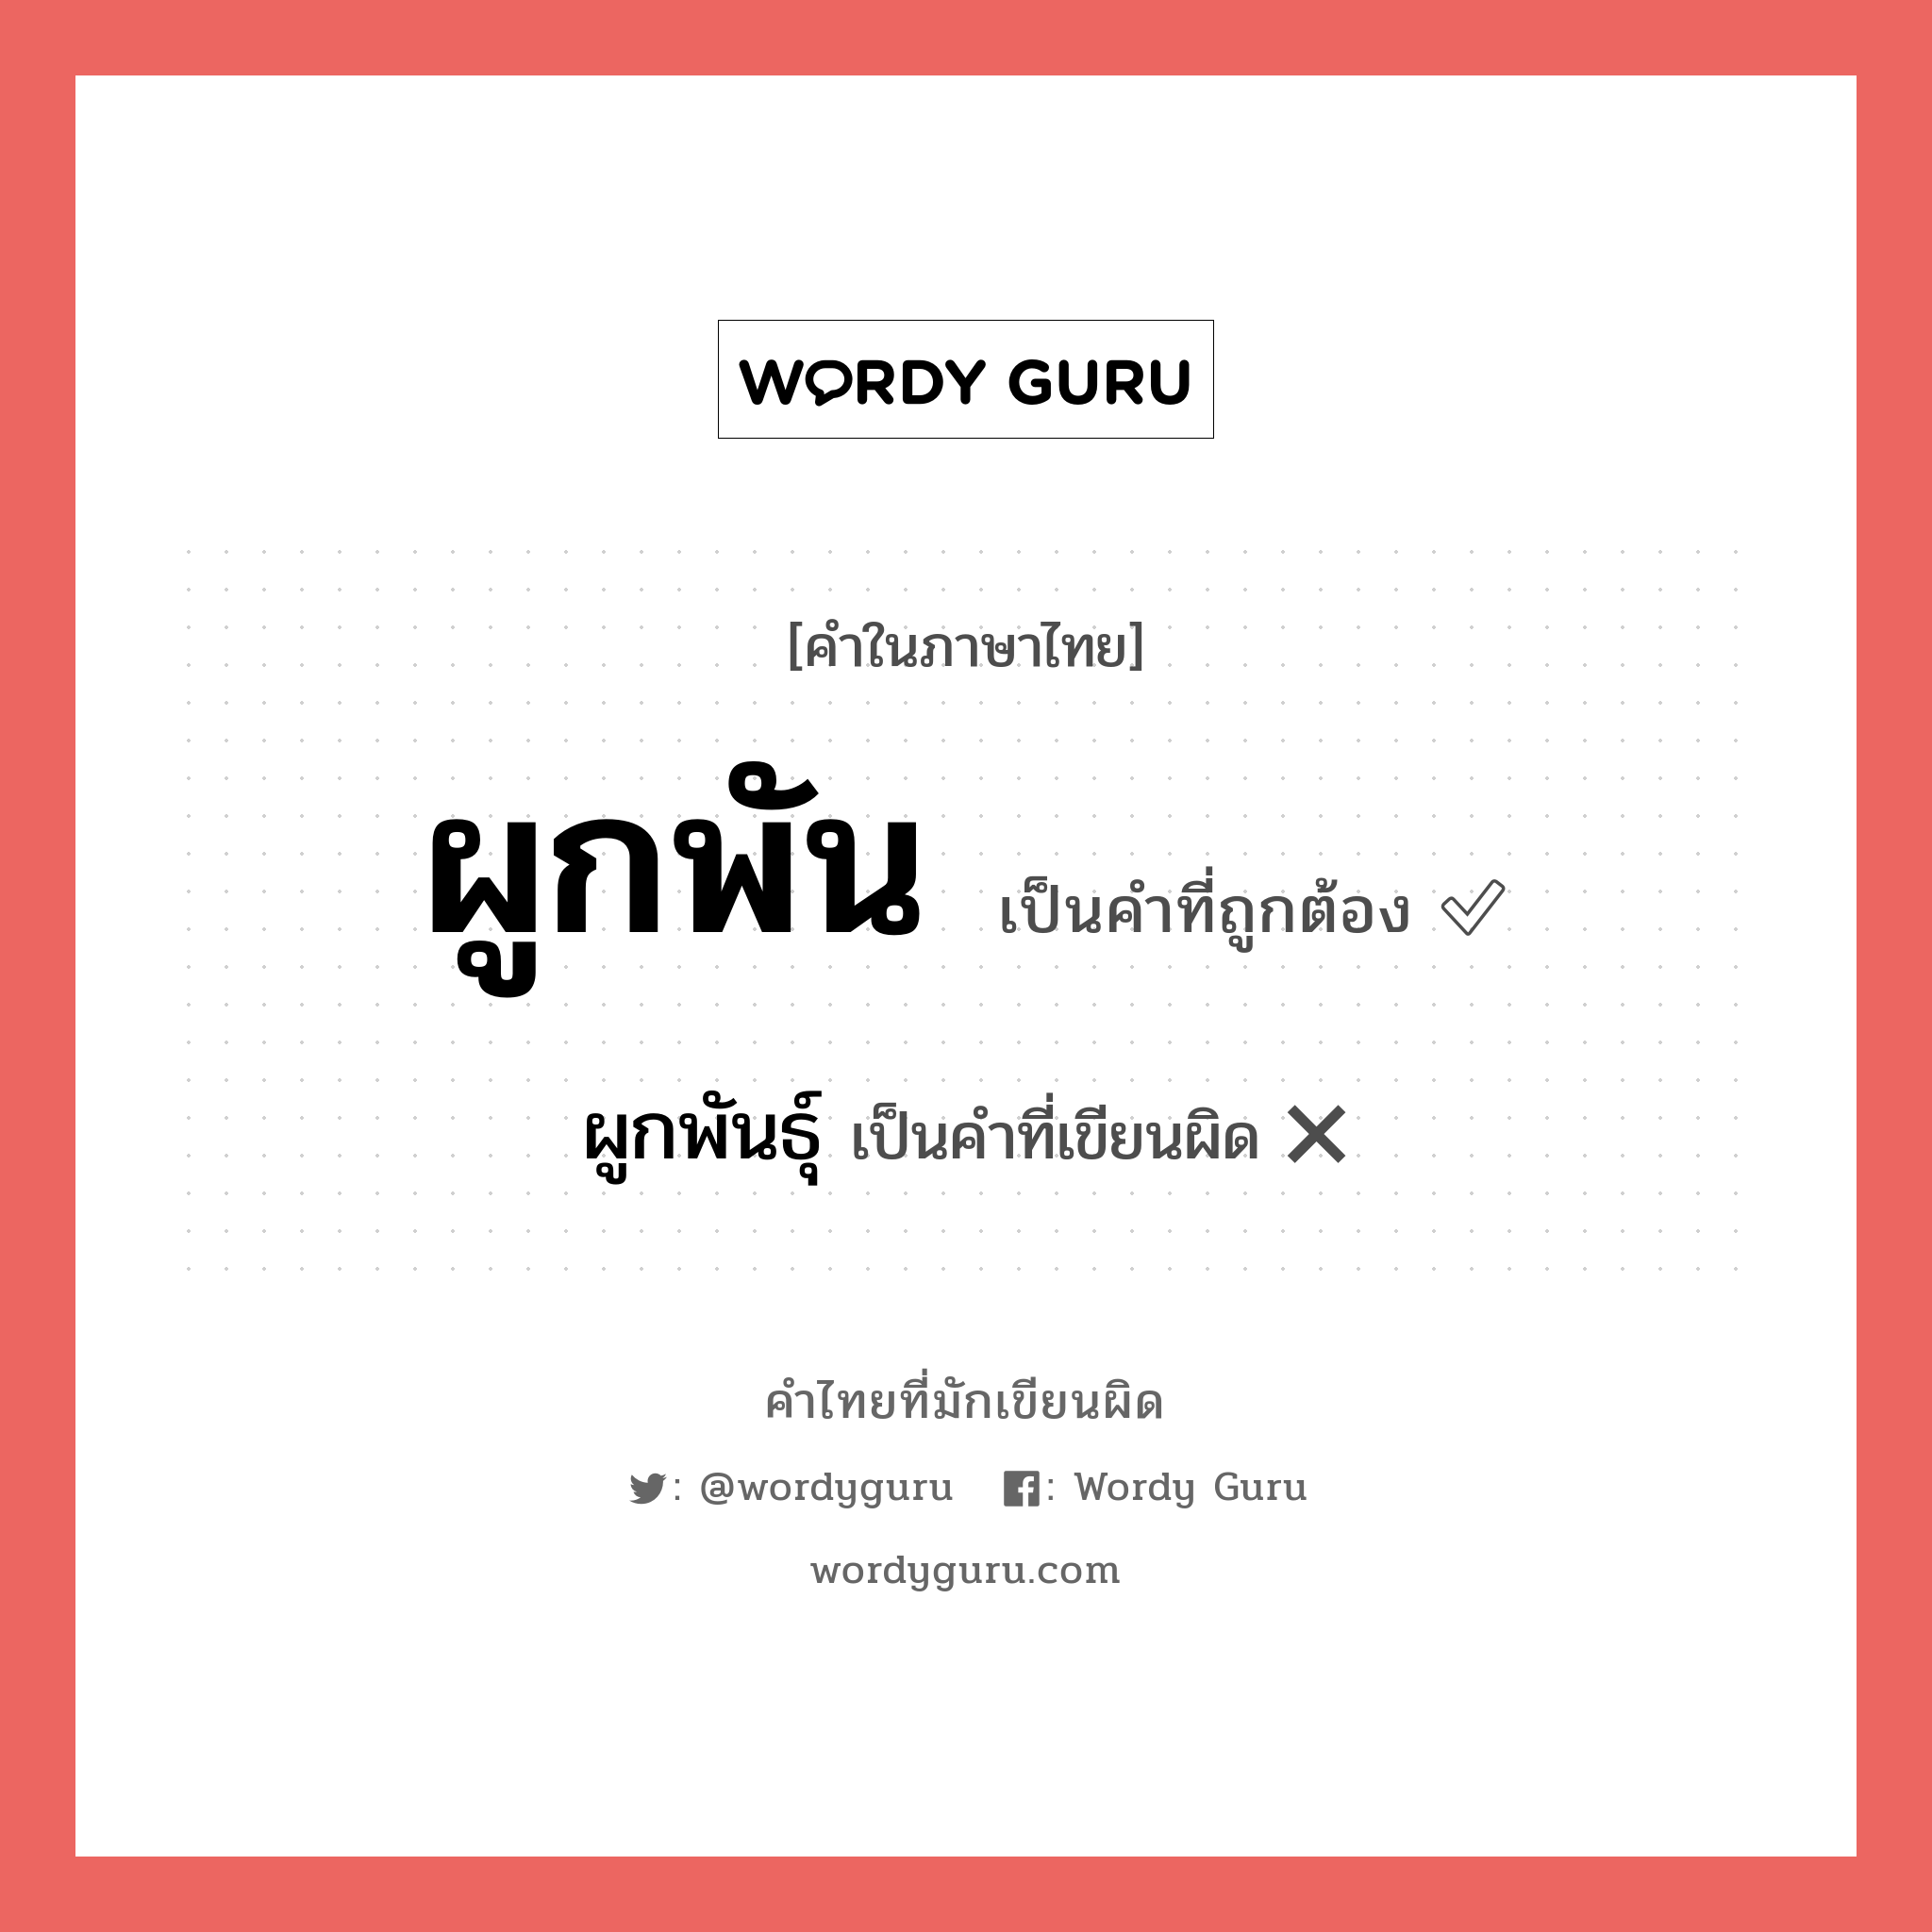 ผูกพัน หรือ ผูกพันธ์ คำไหนเขียนถูก?, คำในภาษาไทยที่มักเขียนผิด ผูกพัน คำที่ผิด ❌ ผูกพันธุ์